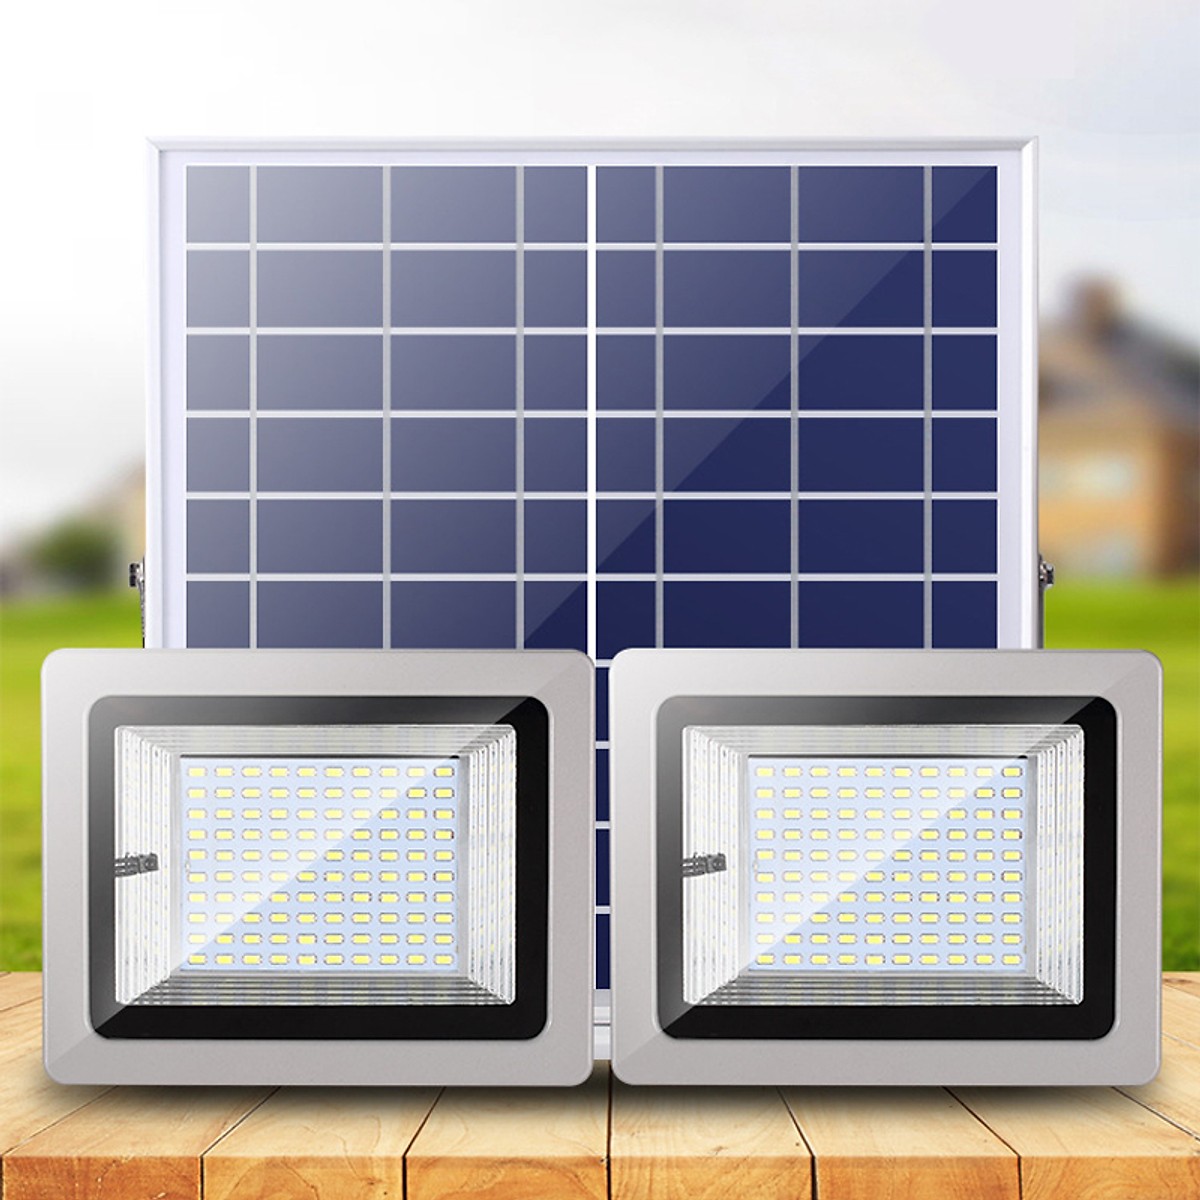 Đèn led năng lượng mặt trời 1 pin quang điện, 2 đèn, lắp ngoài trời hoặc trong nhà( 63w với 63 chip led)